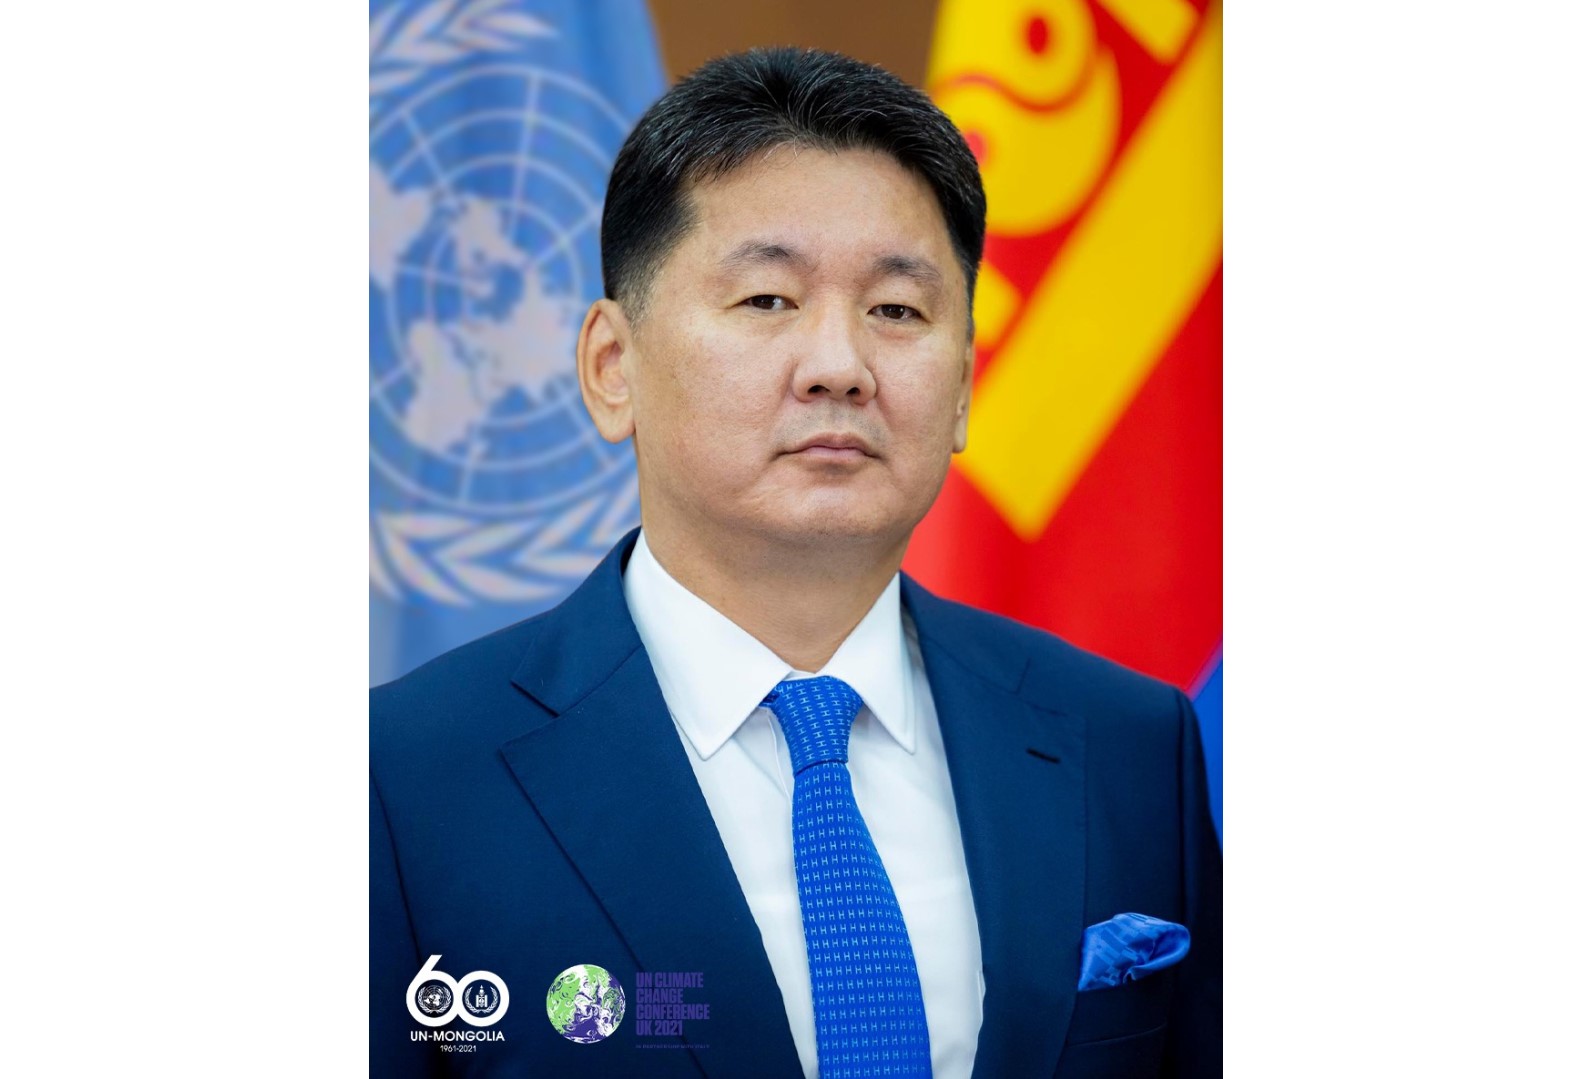 Монгол Улсын Ерөнхийлөгч Уур амьсгалын өөрчлөлтийн асуудлаарх дэлхийн удирдагчдын дээд түвшний уулзалтад оролцохоор эх орноосоо мордлоо